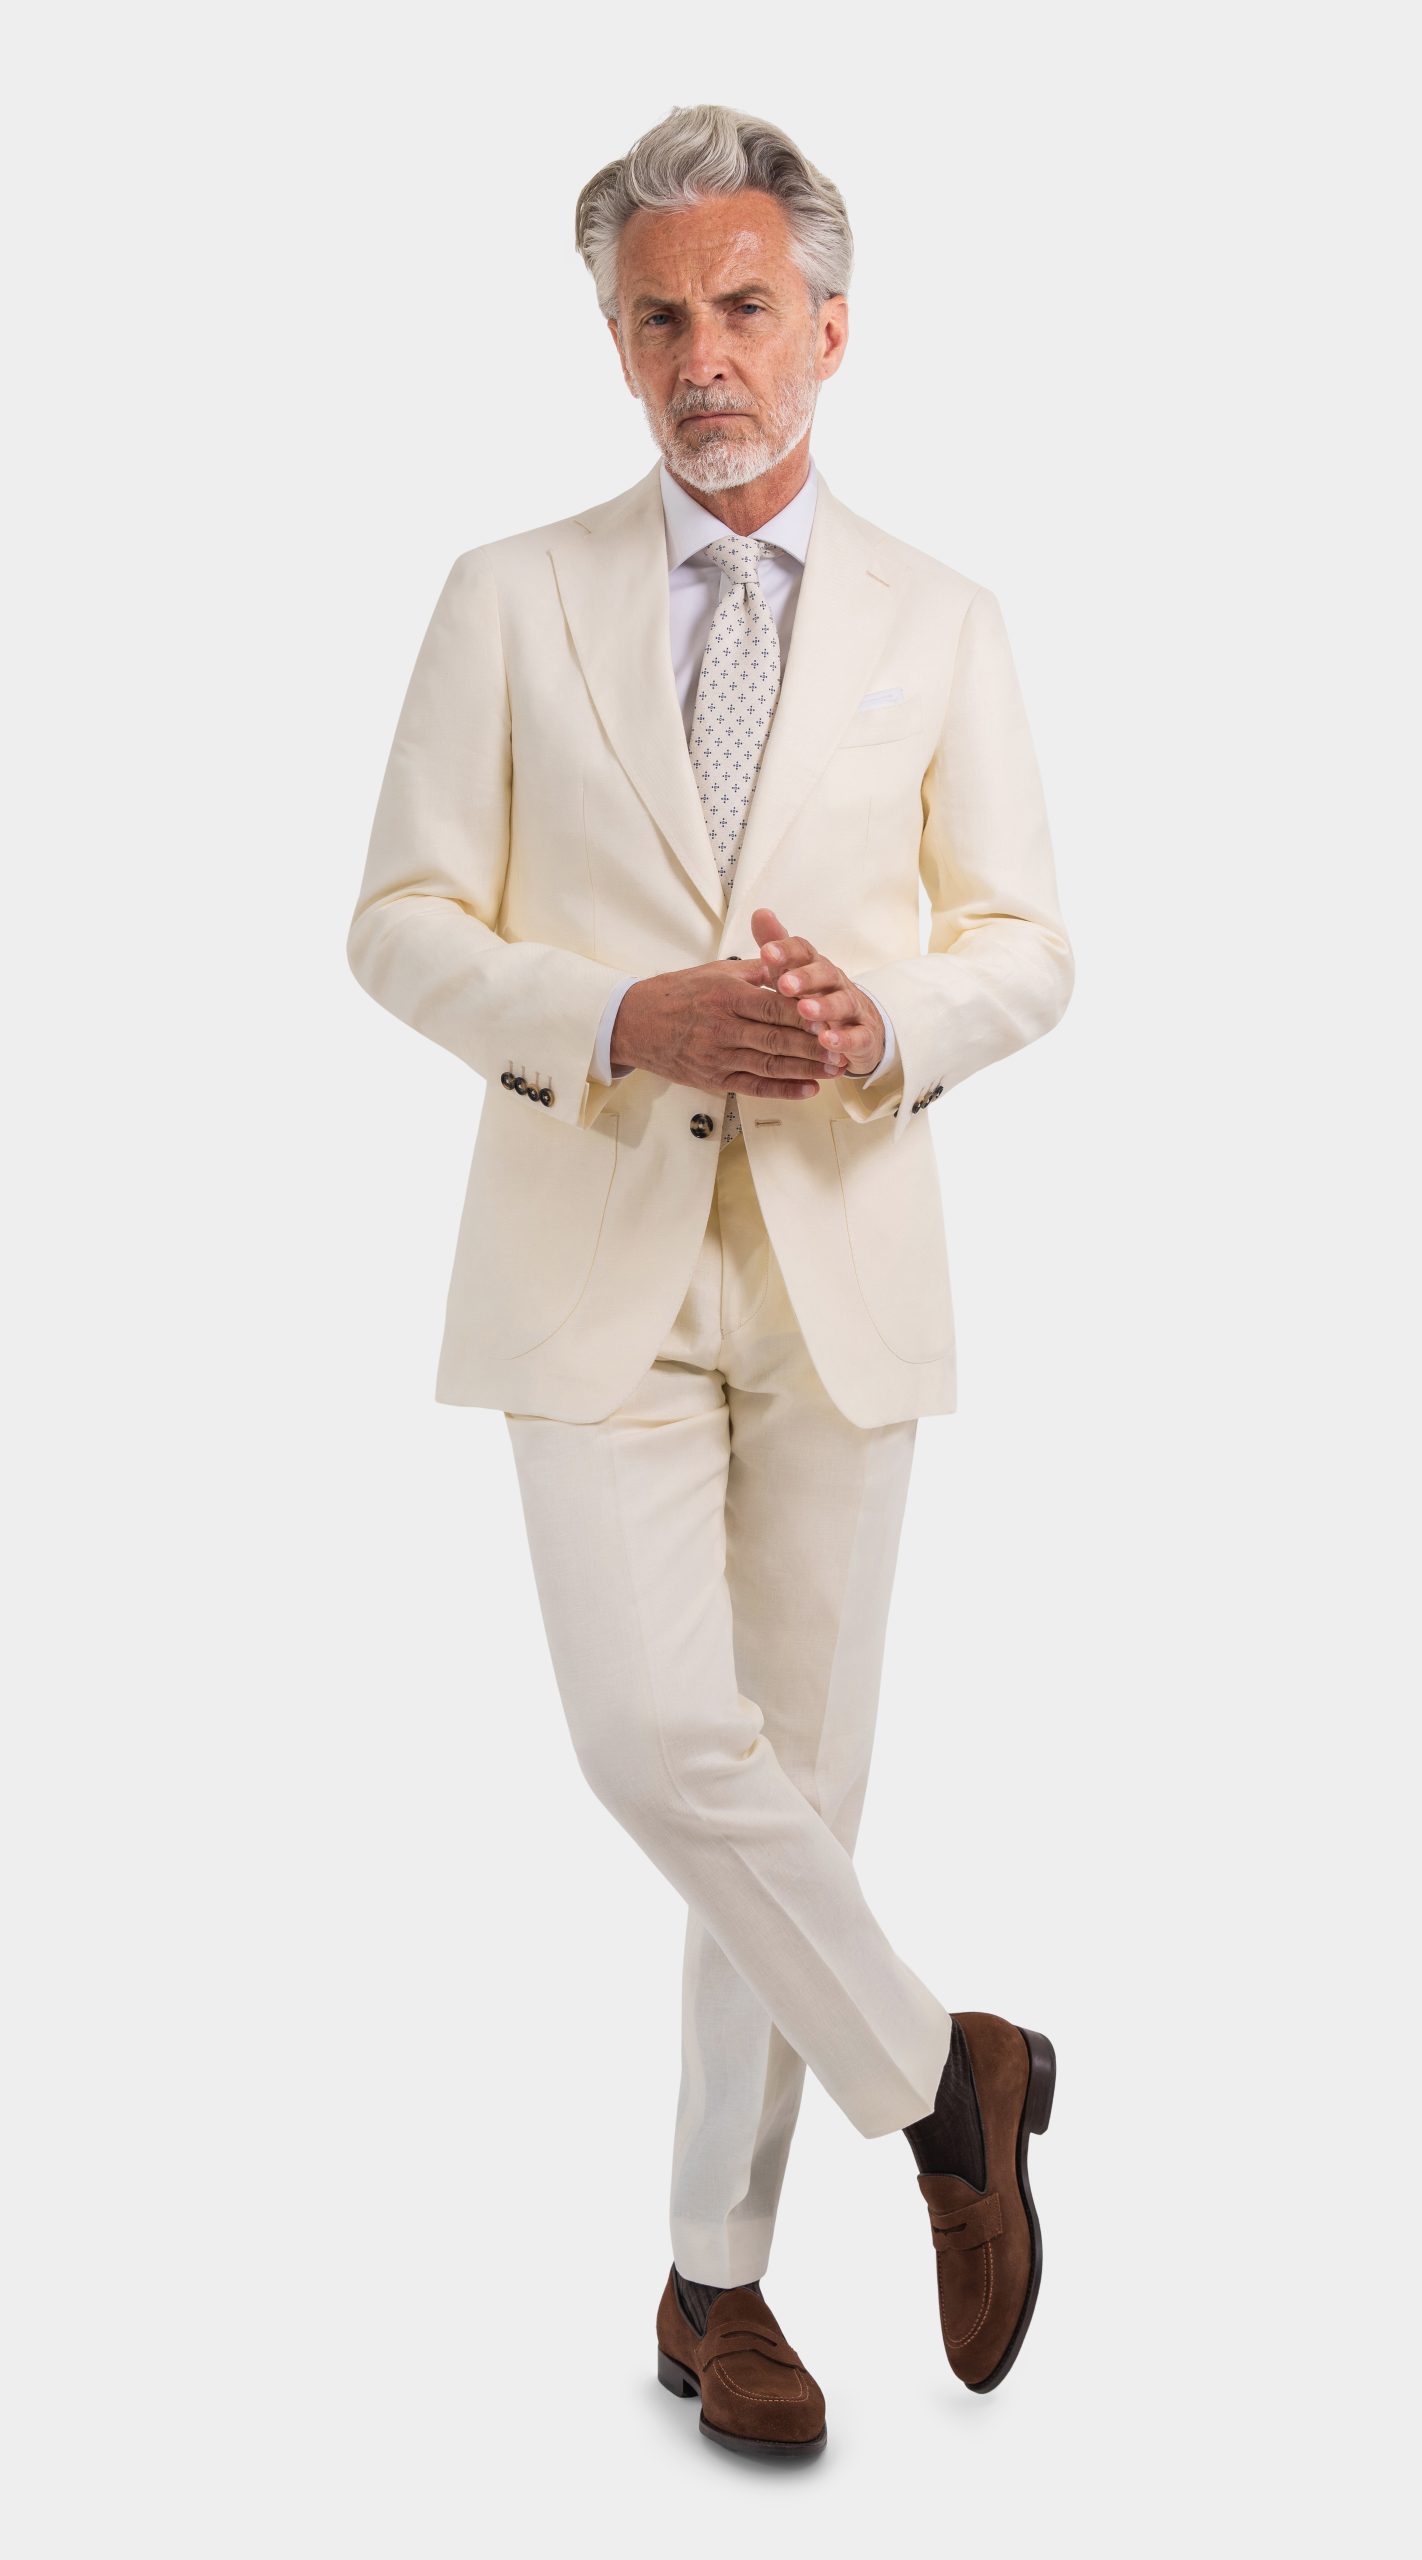 Mond Ivory Linen Twill Suit, herren anzug creme hochzeit